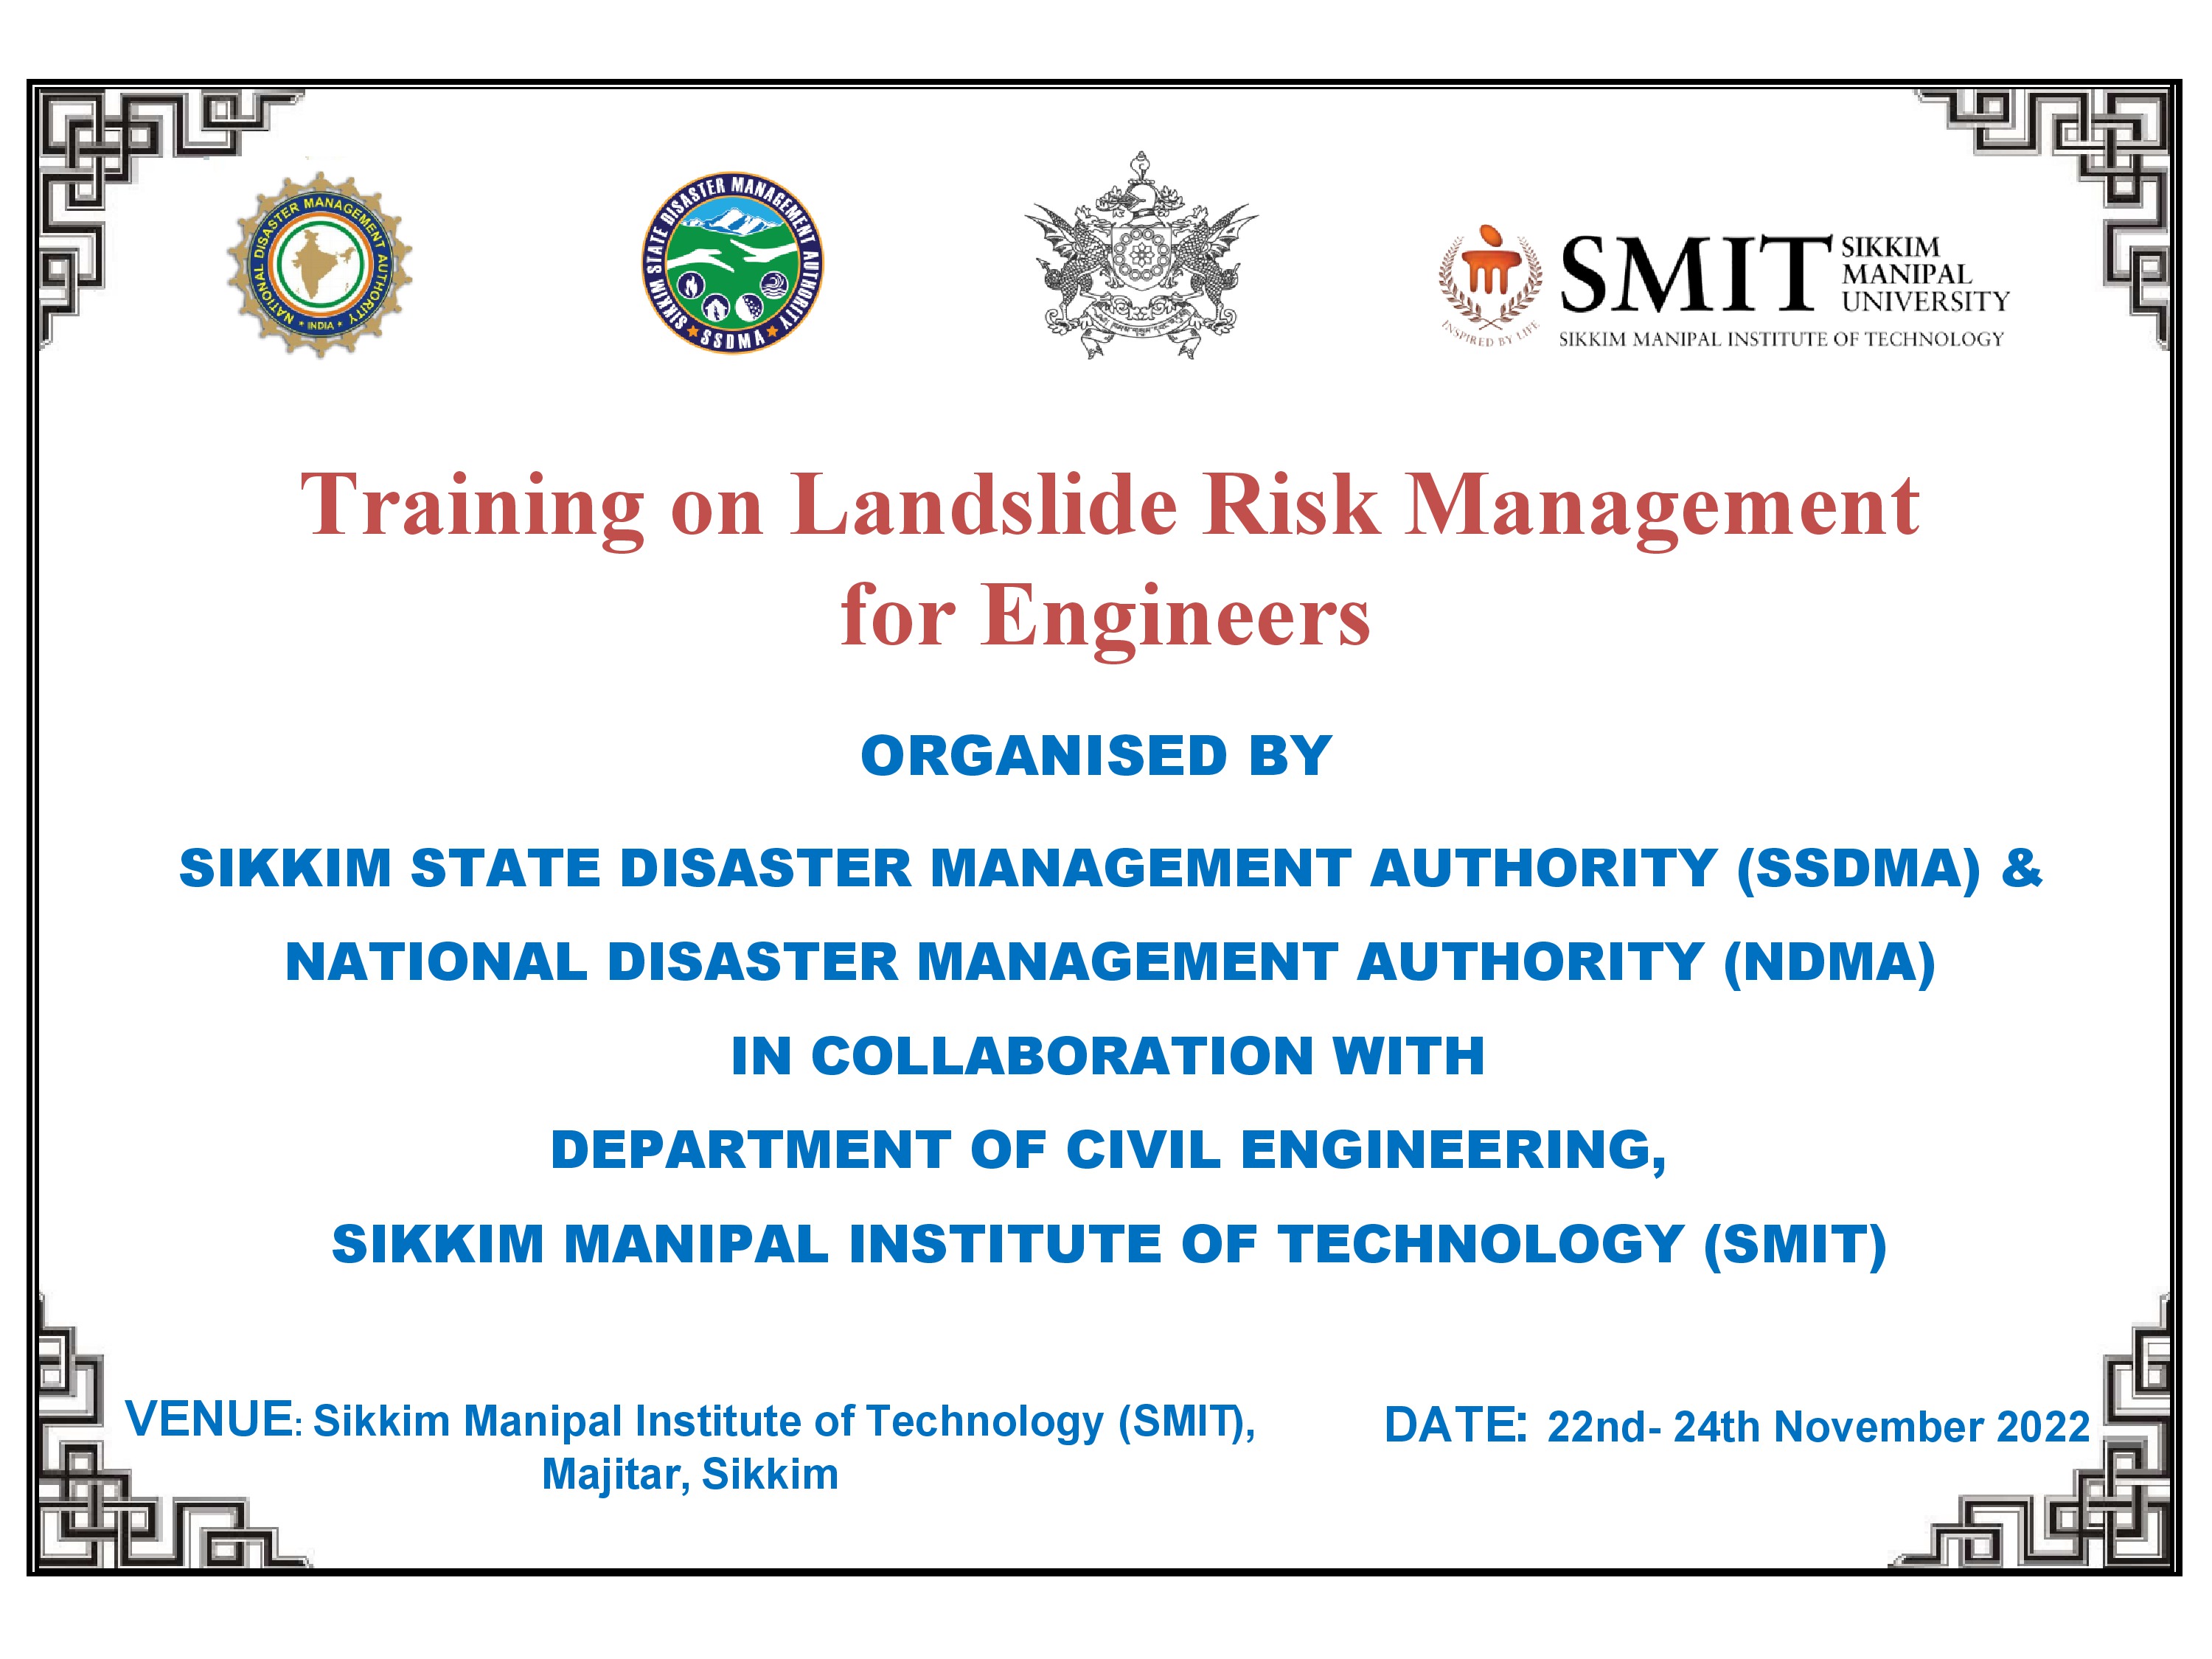 Training on Landslide Risk Management for Engineers